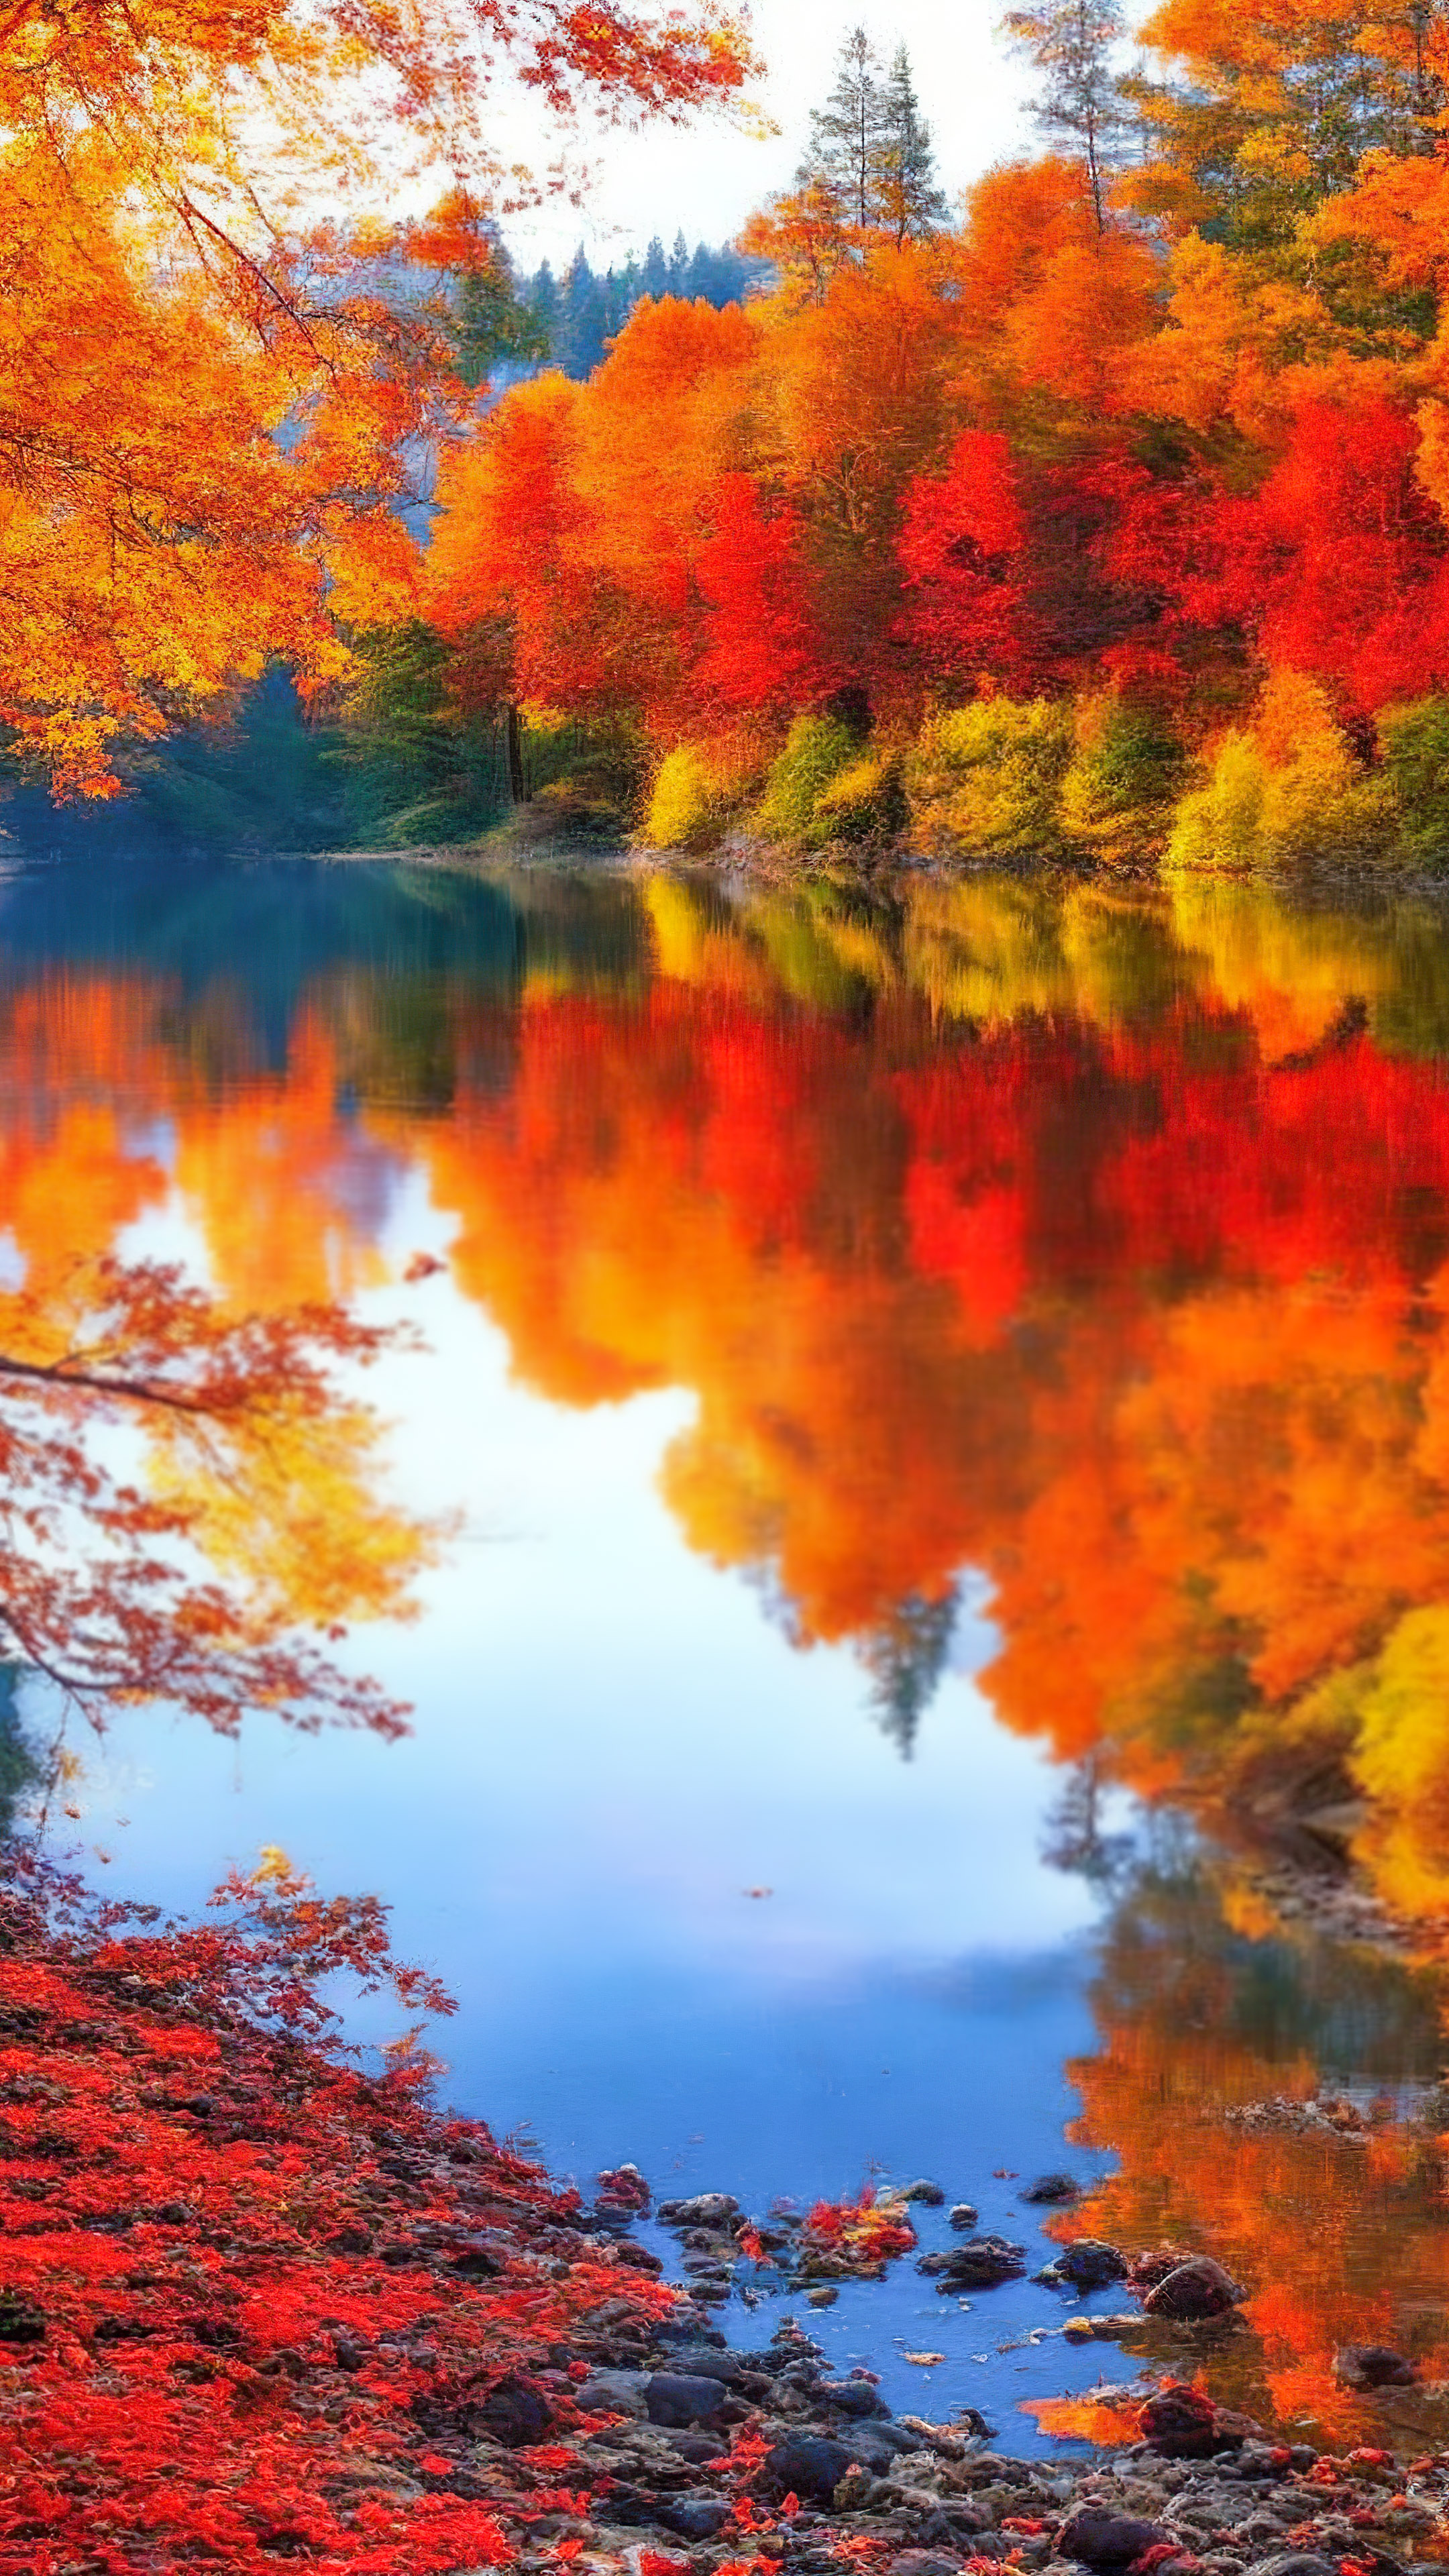 Ornez votre iPhone avec un fond d’écran de paysage en HD, présentant un lac tranquille entouré d’un feuillage d’automne vibrant, reflété dans l’eau claire et immobile.